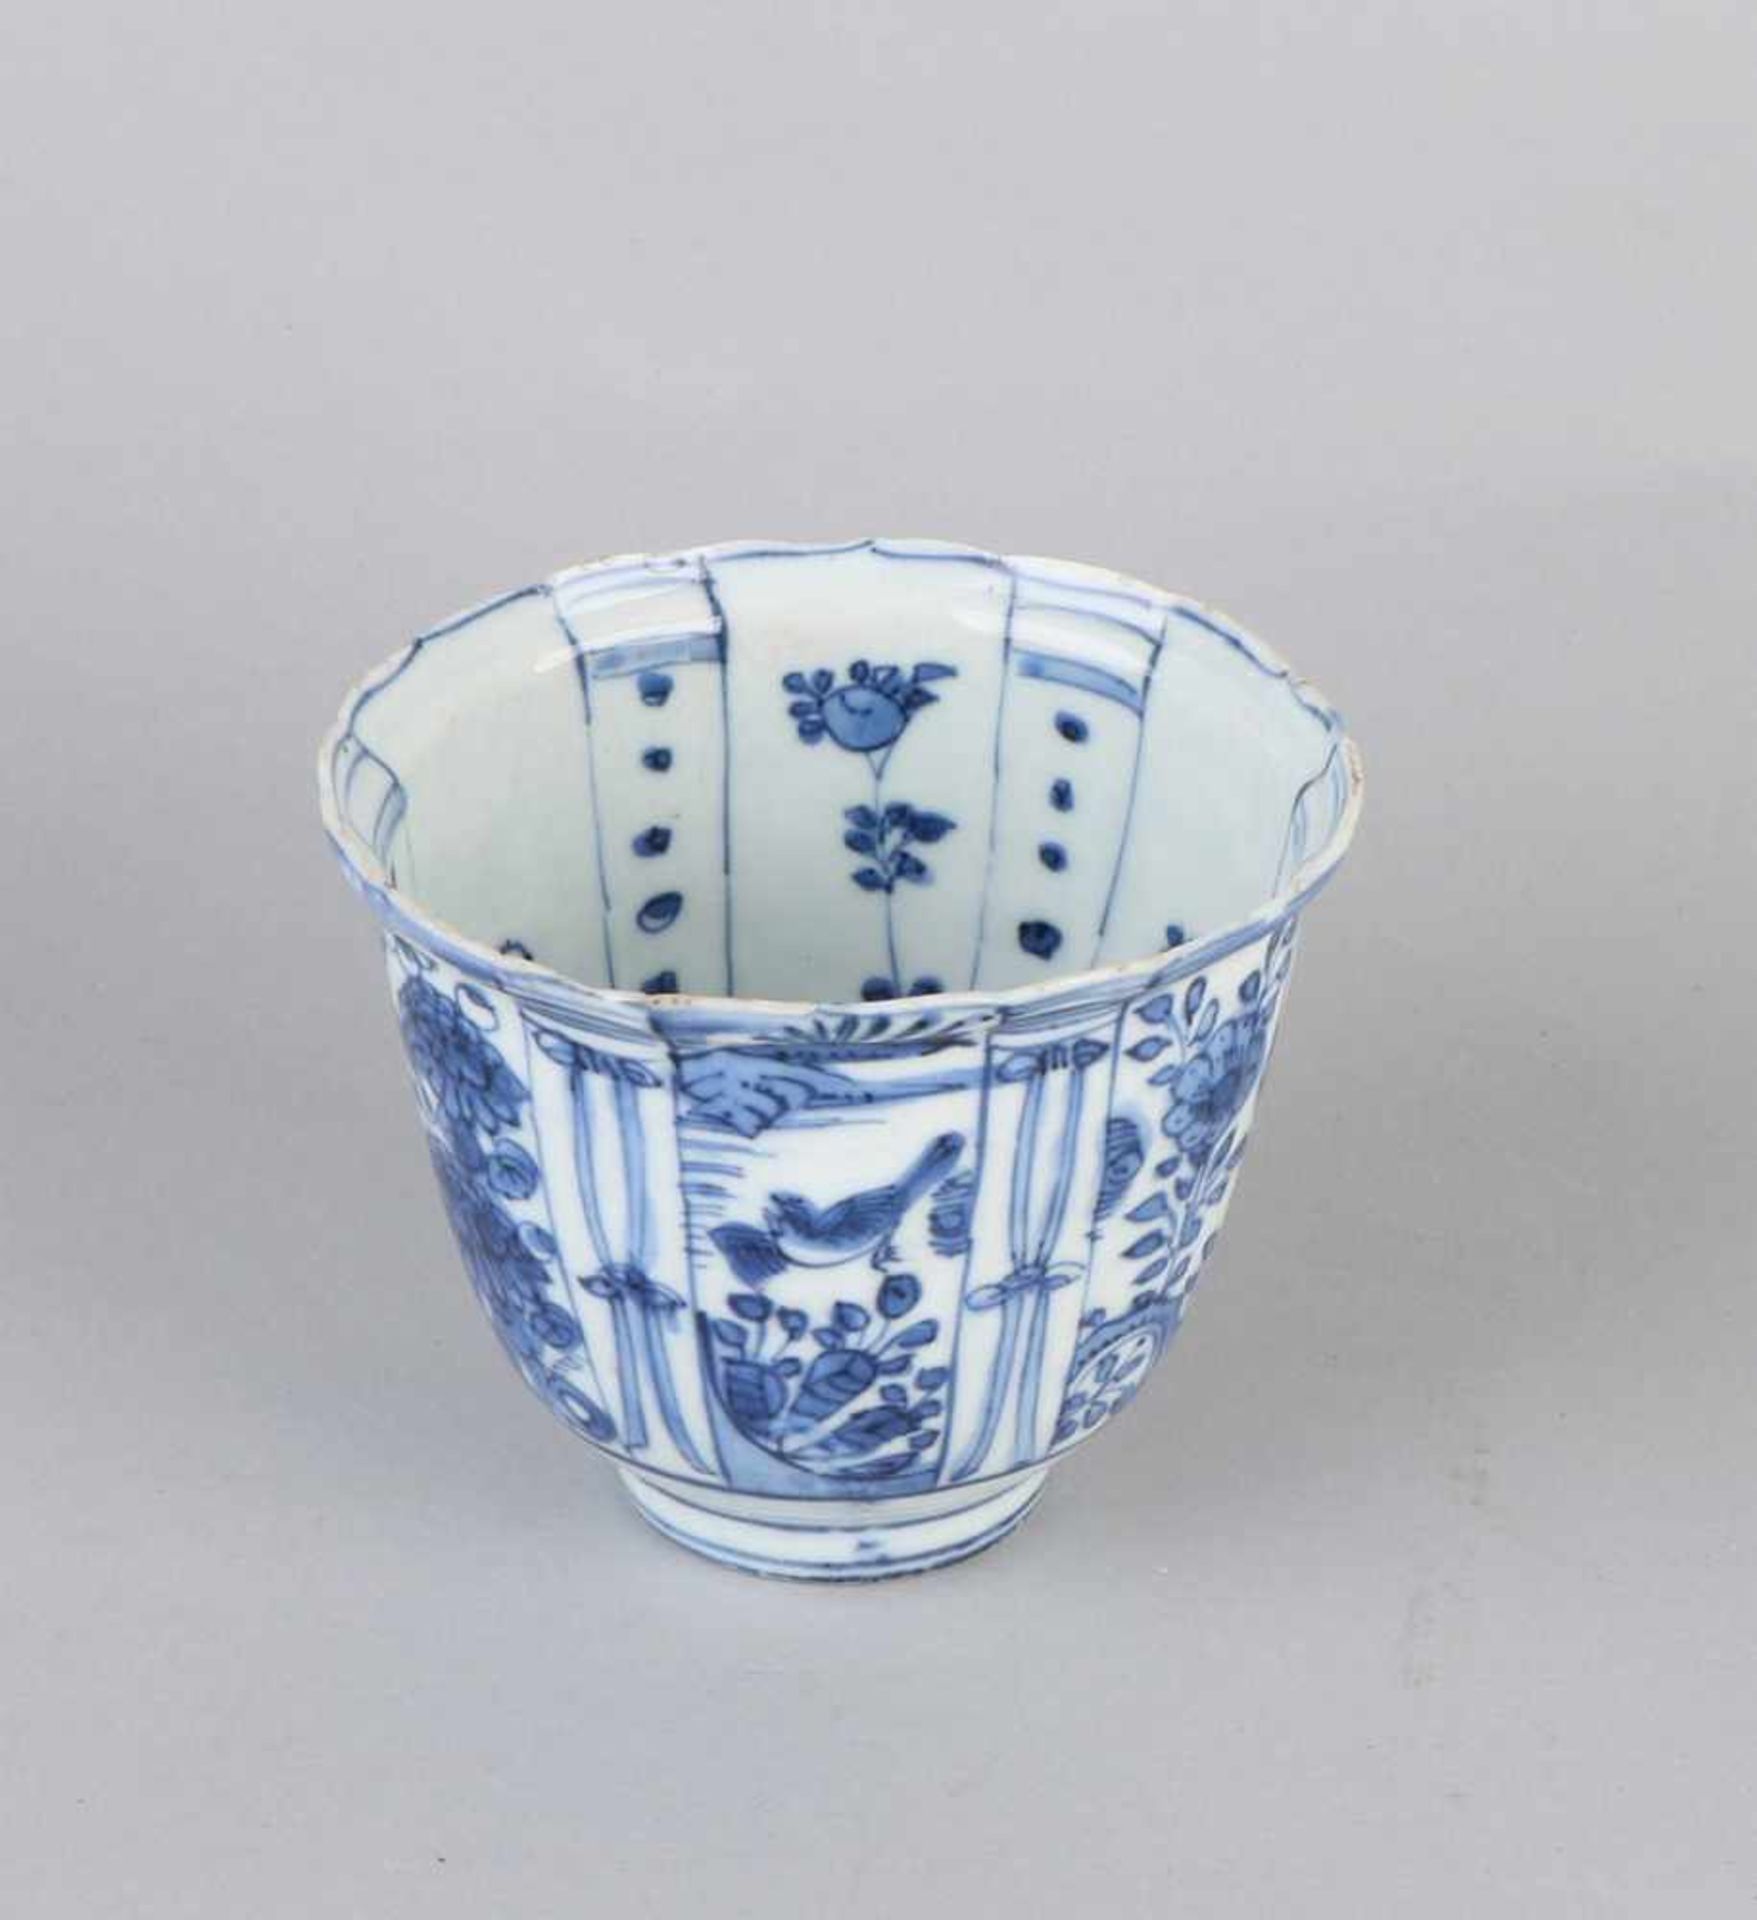 Seltene chinesische Wanli-Schokotasse aus knisterndem Porzellan aus dem 17. Jahrhundert mit